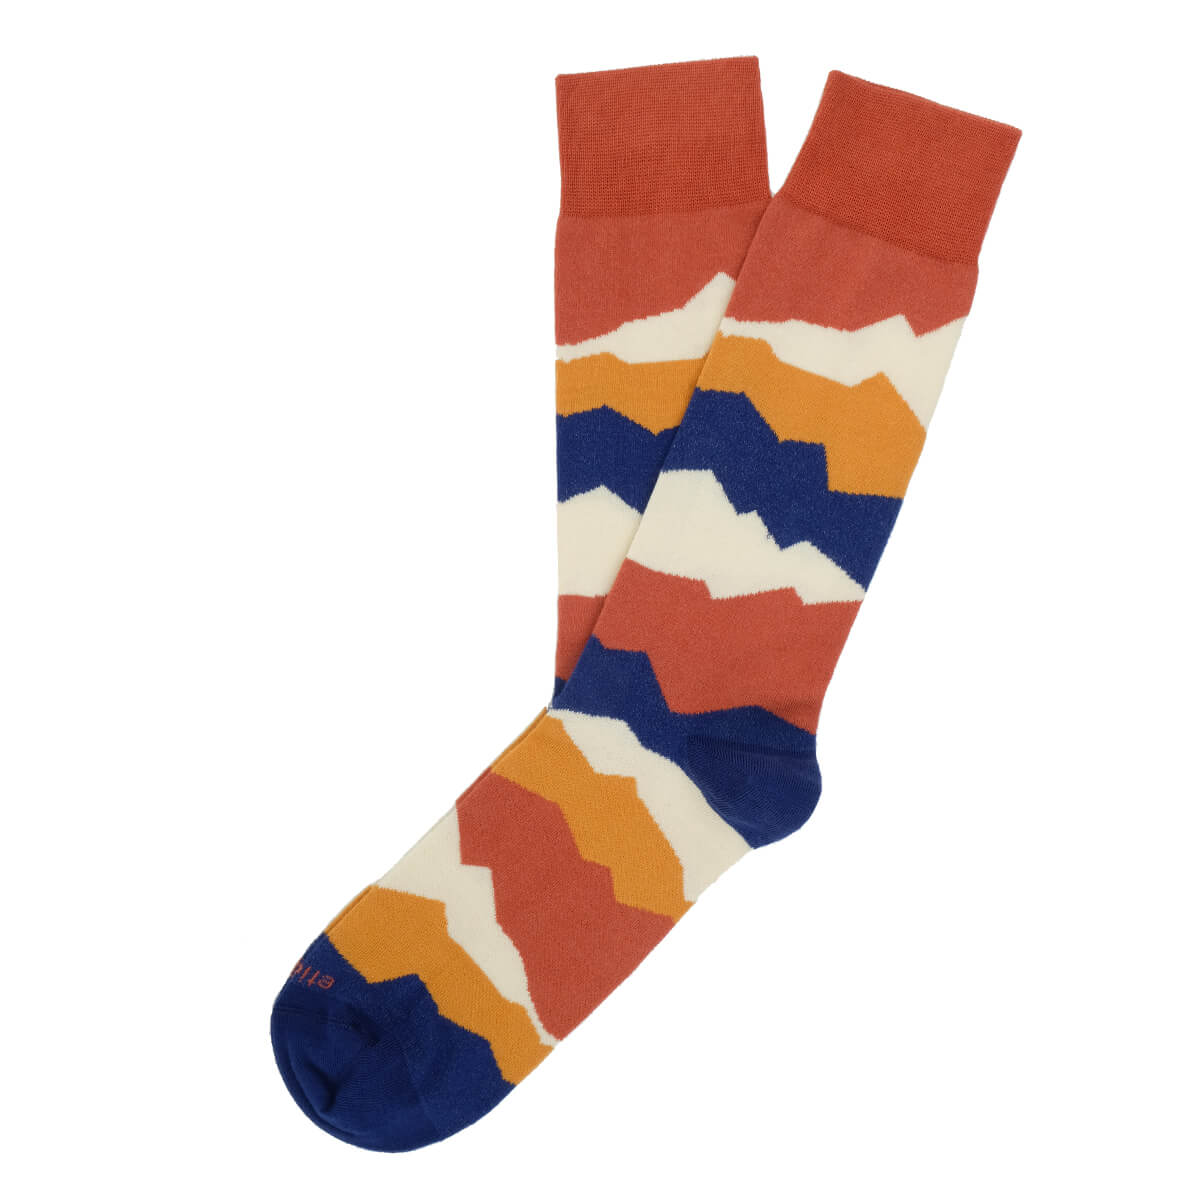 Mens Socks - Seismic Men's Socks - Orange⎪Etiquette Clothiers